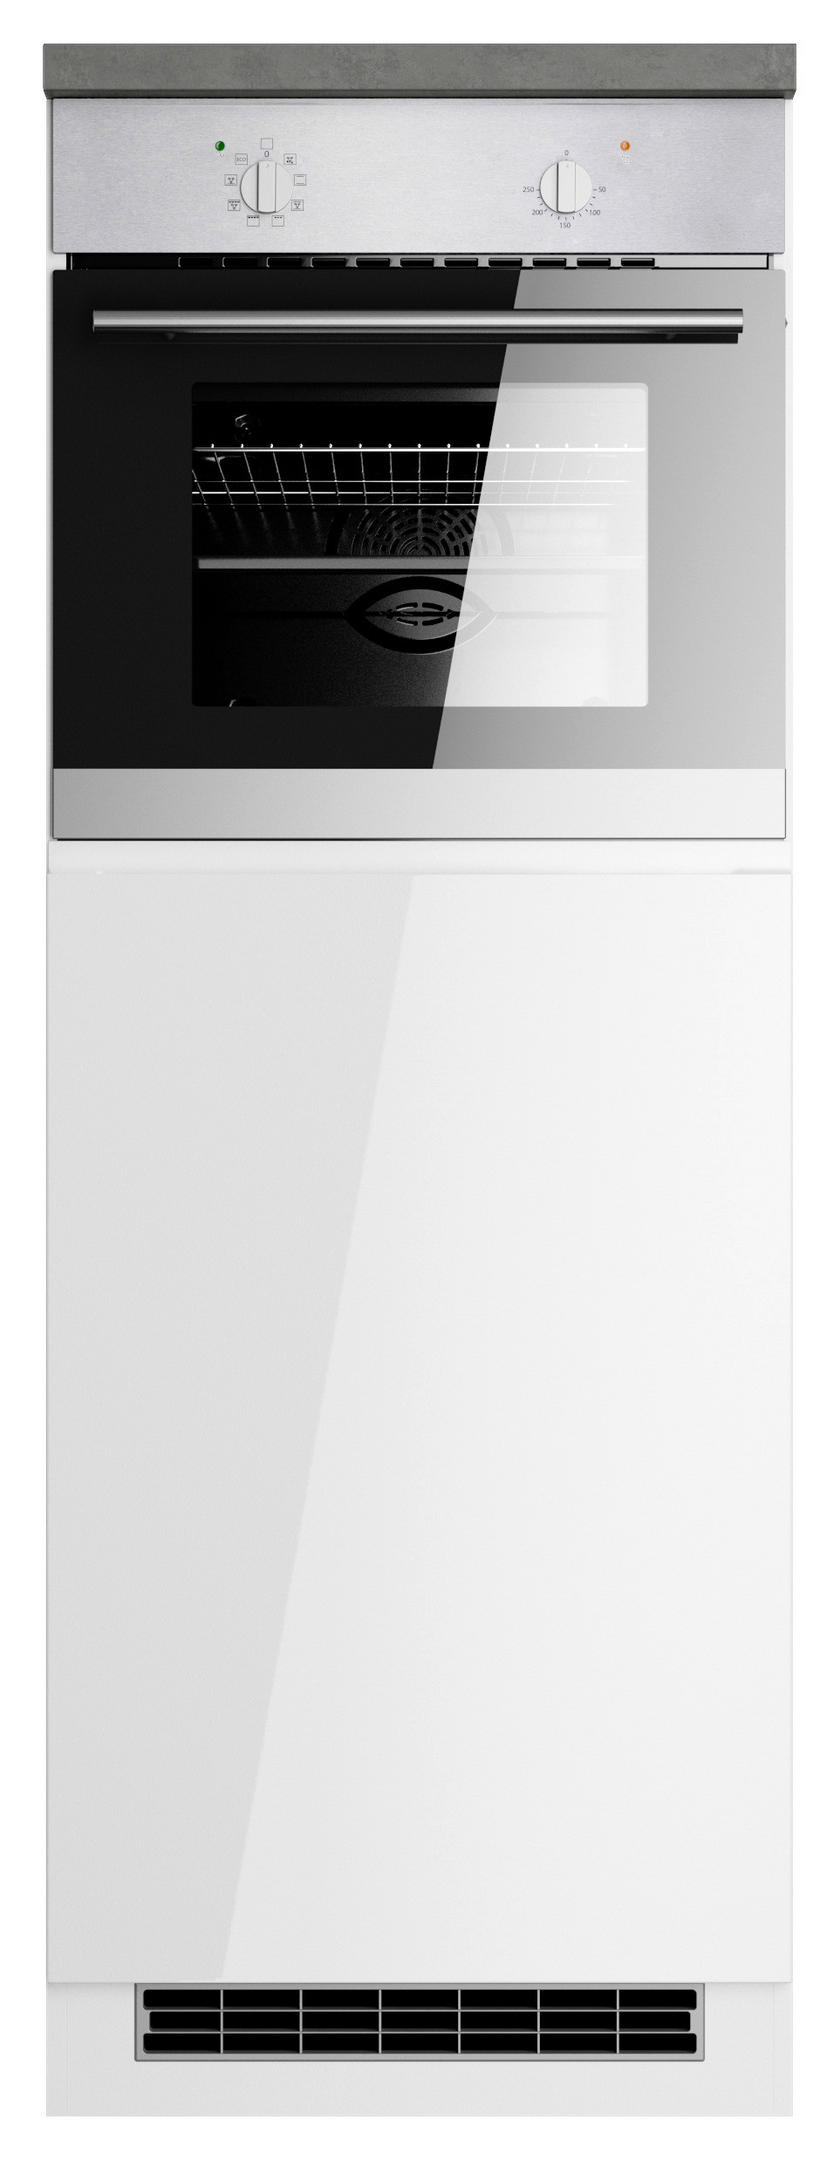 Held HERDUMBAUSCHRANK 60/86/60 cm in Grau, Weiß, Weiß Hochglanz jetzt nur  online ➤